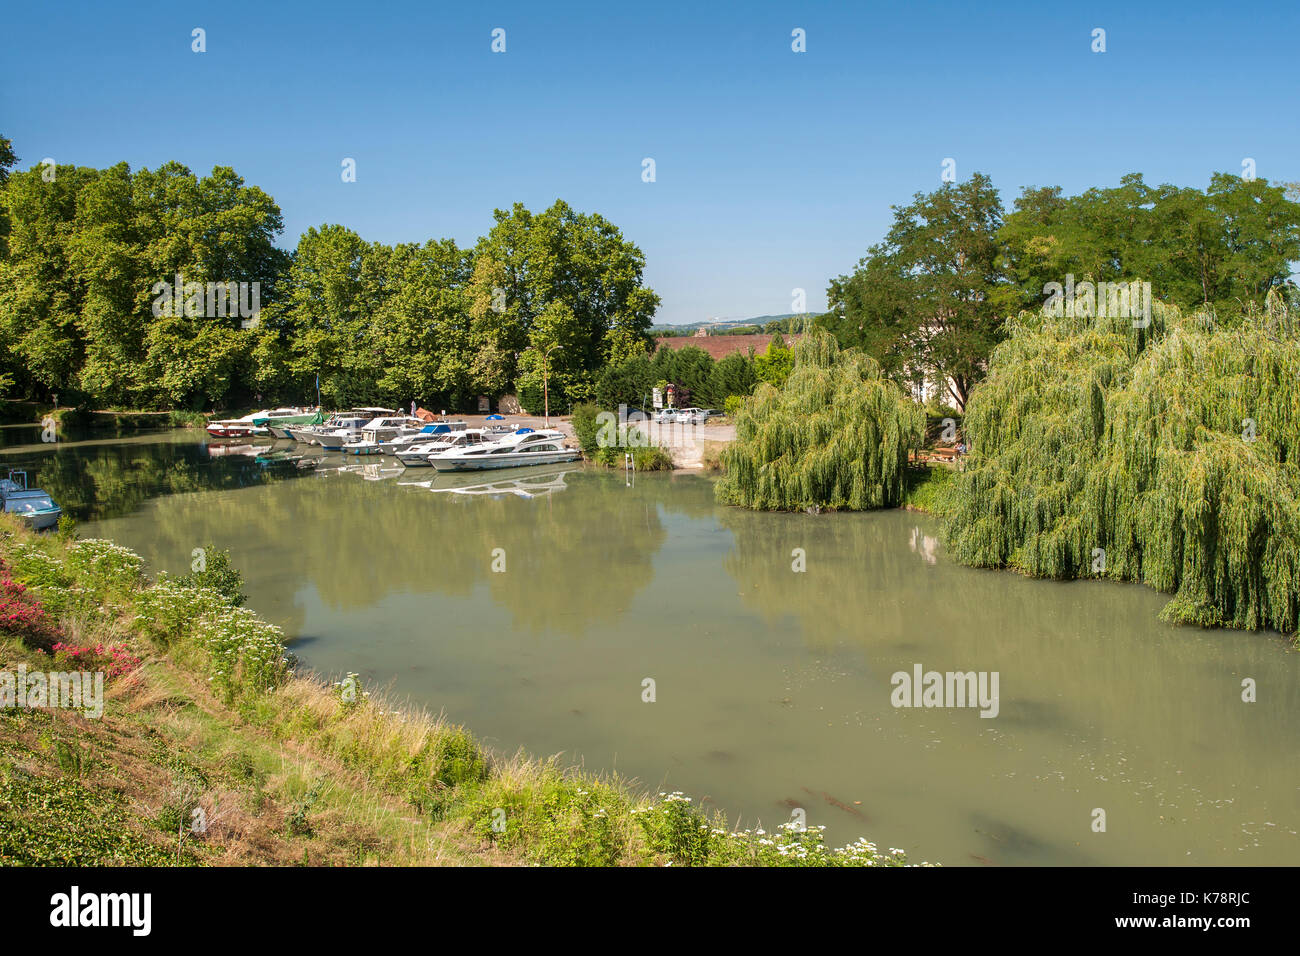 Bateaux amarrés à l'extérieur du canal damazan village sur le canal latéral à la Garonne dans la région de la dordogne sud-ouest de la france. Banque D'Images